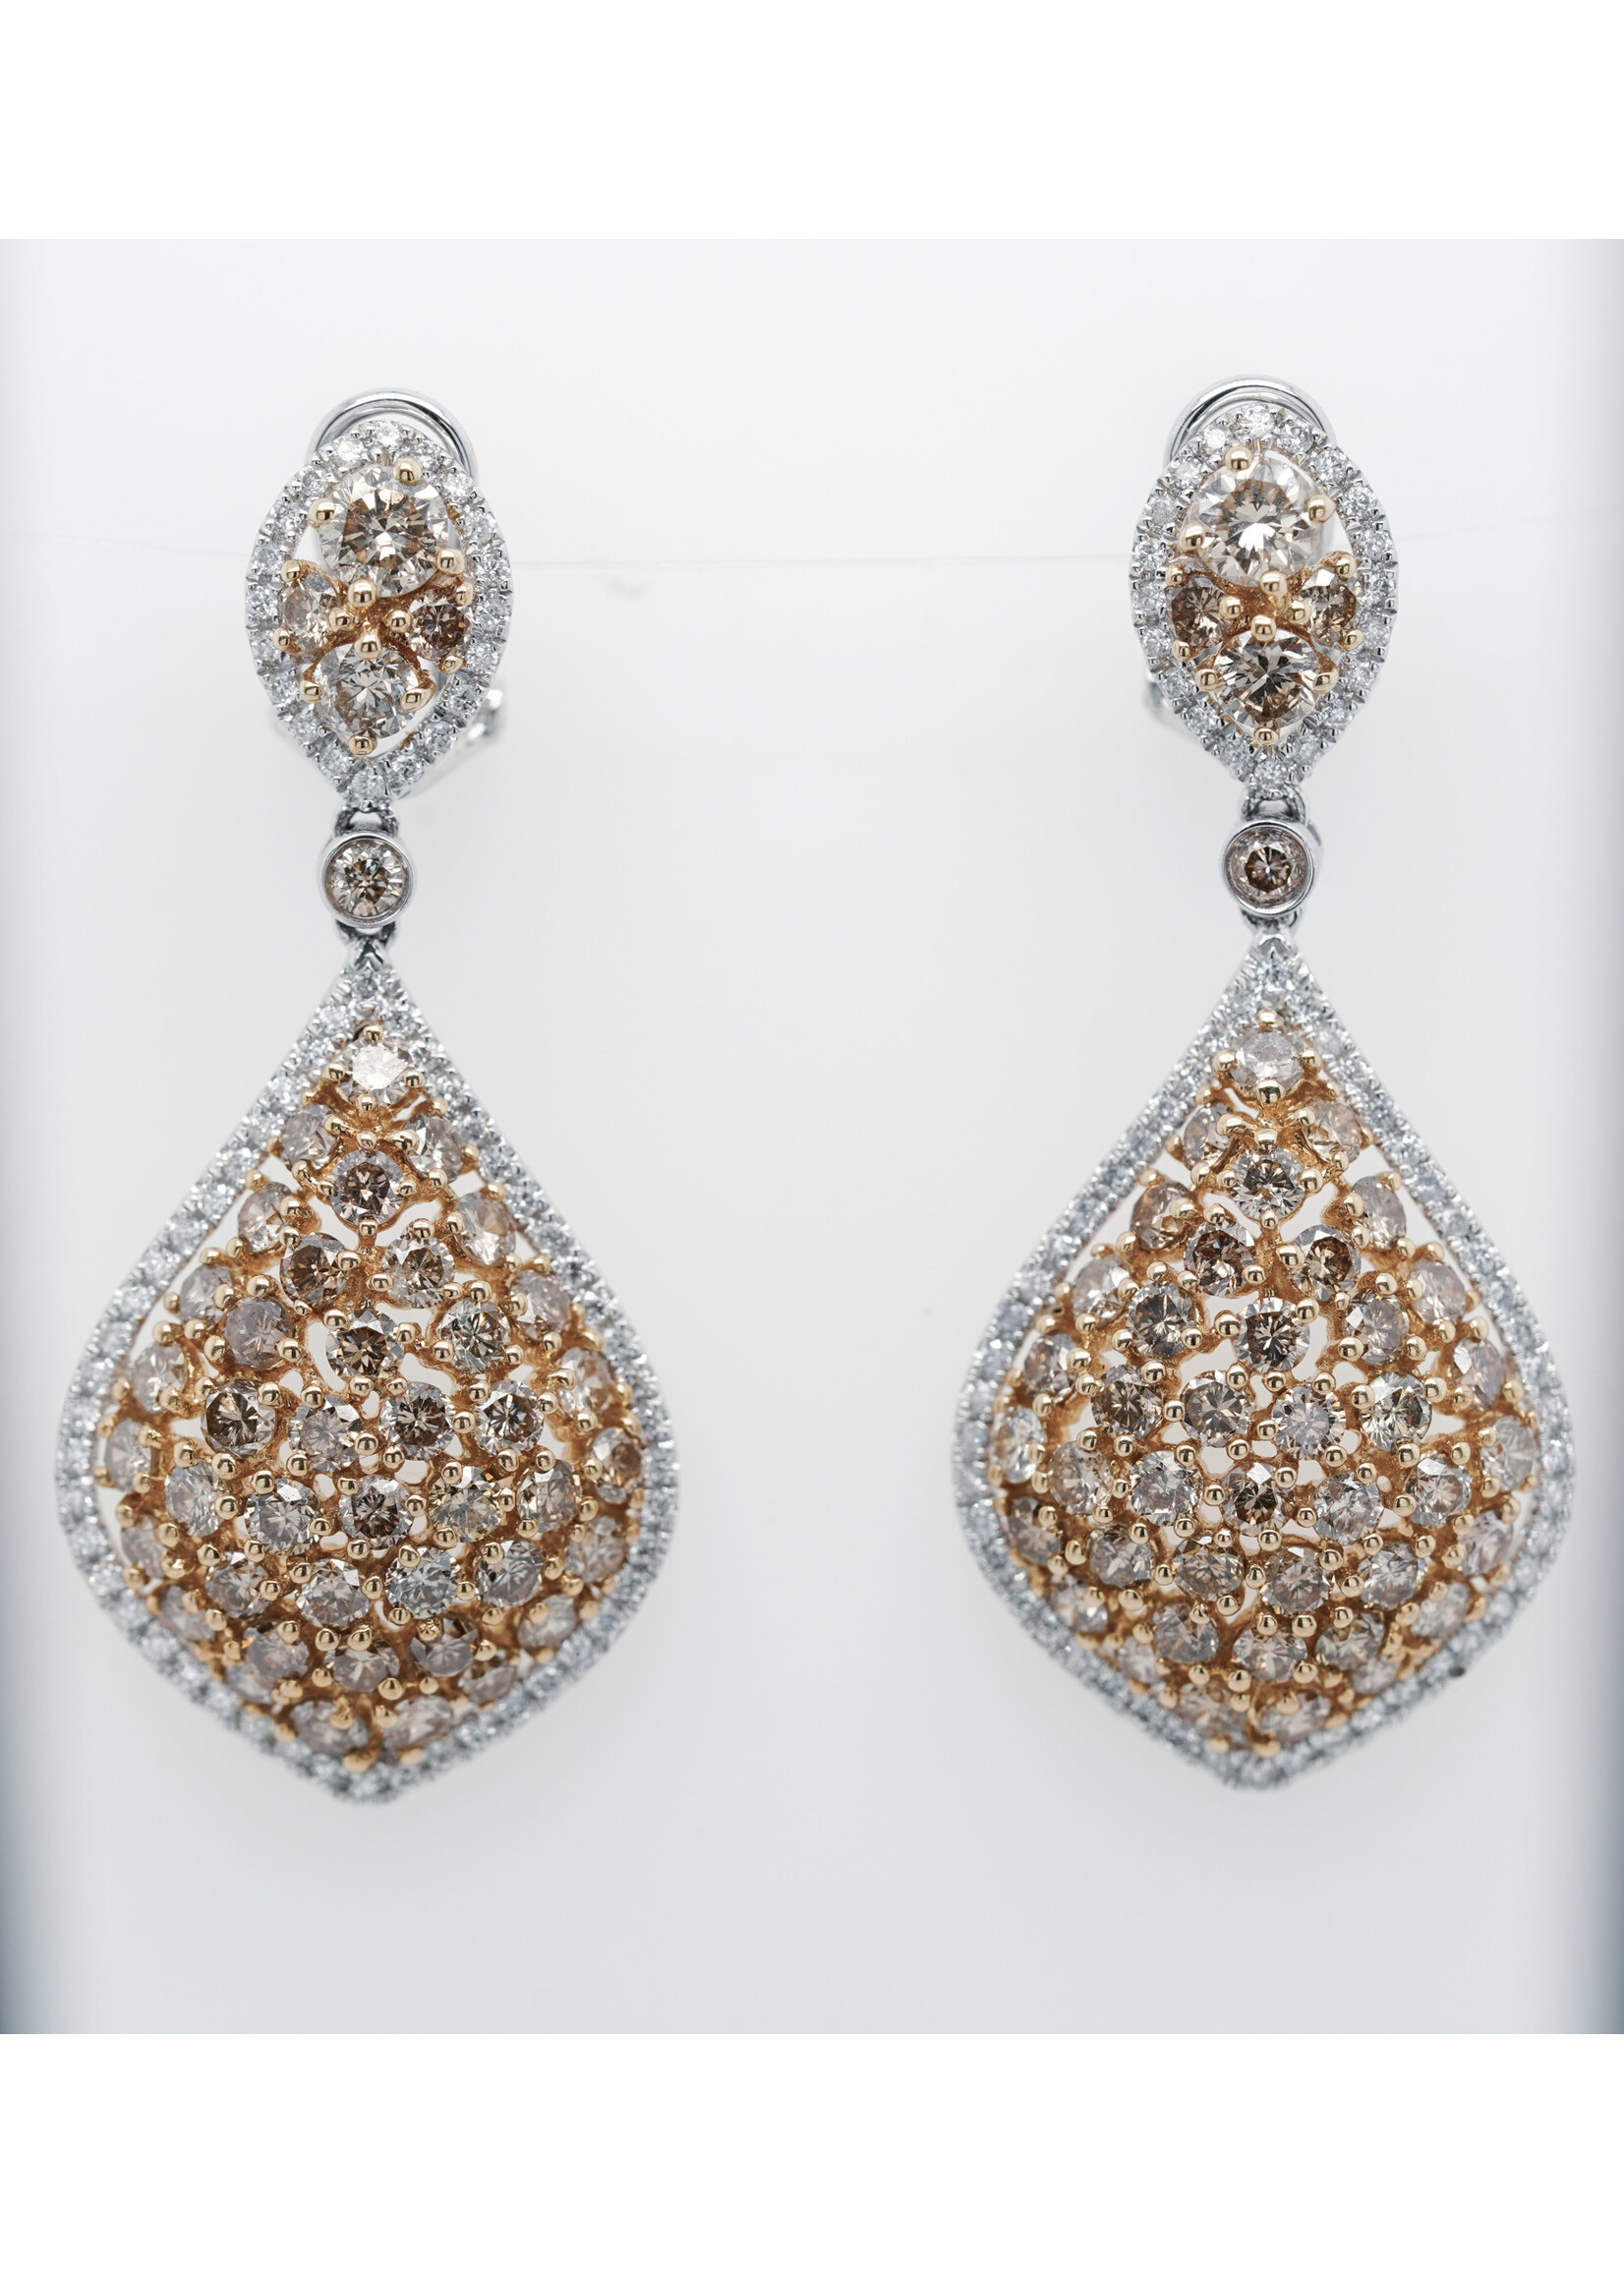 14KWY 9.2g 5.62ctw Diamond Chandelier Drop Earrings